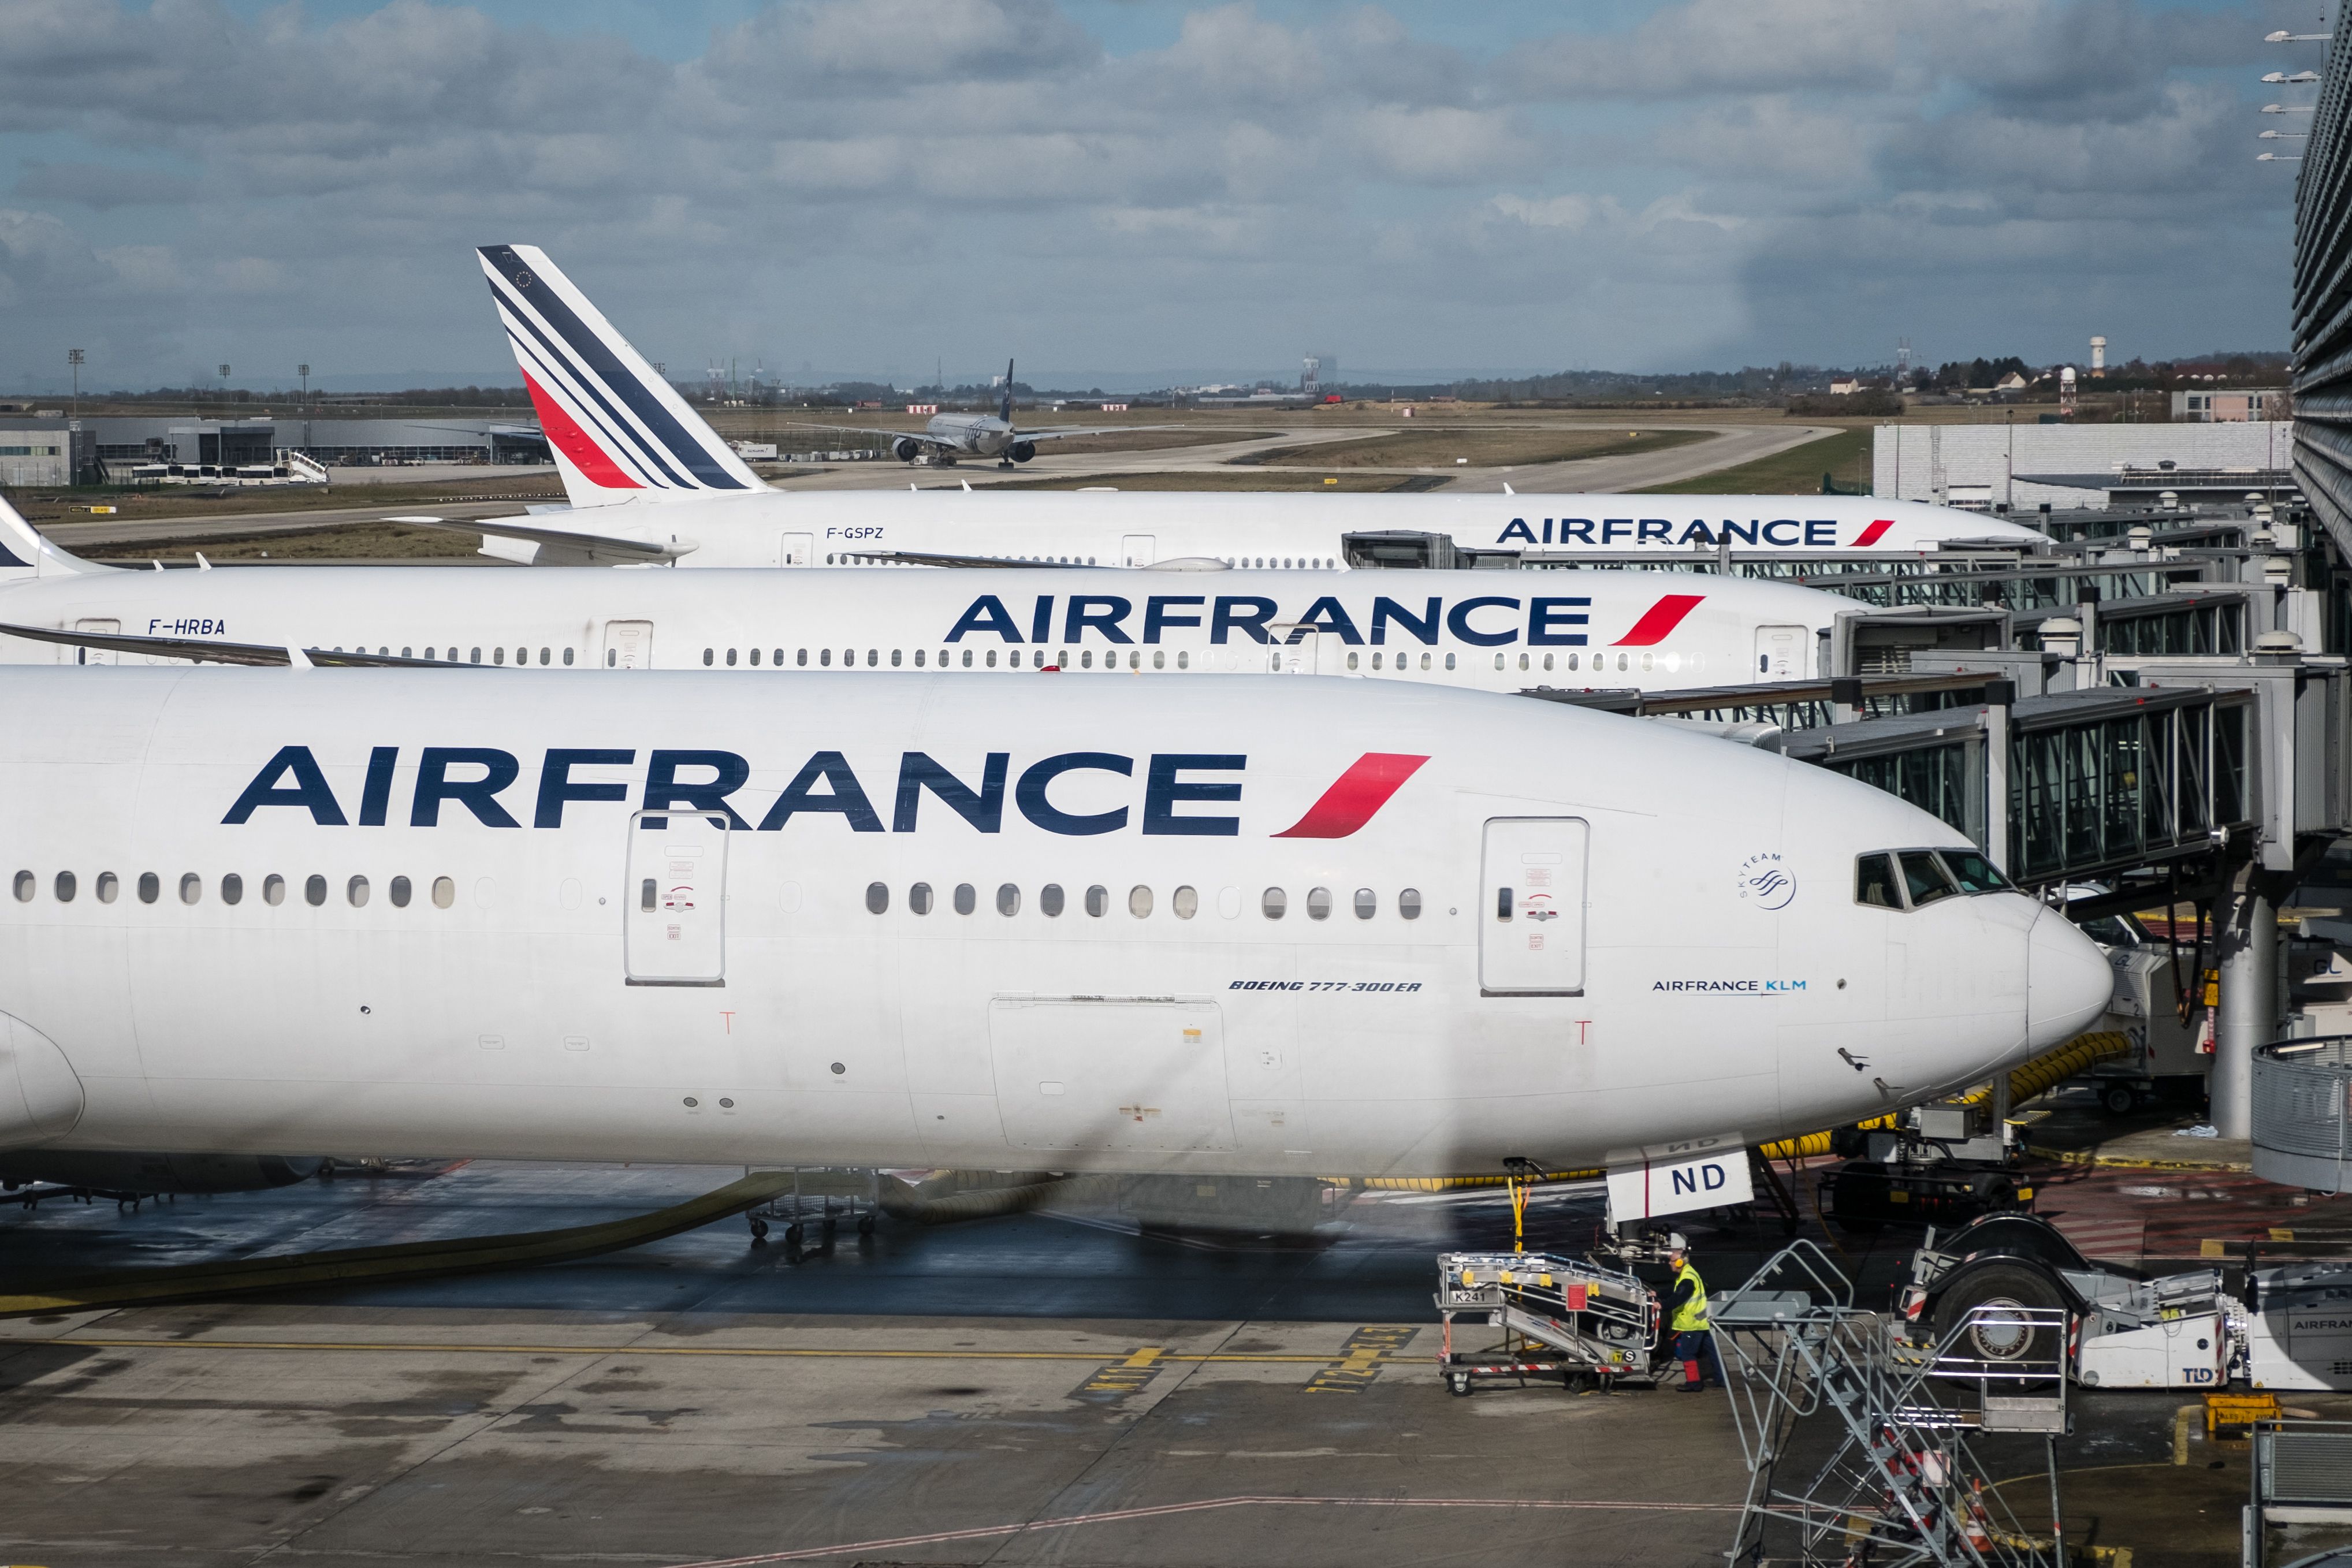 Several Air France aircraft parked at Paris CDG airport.